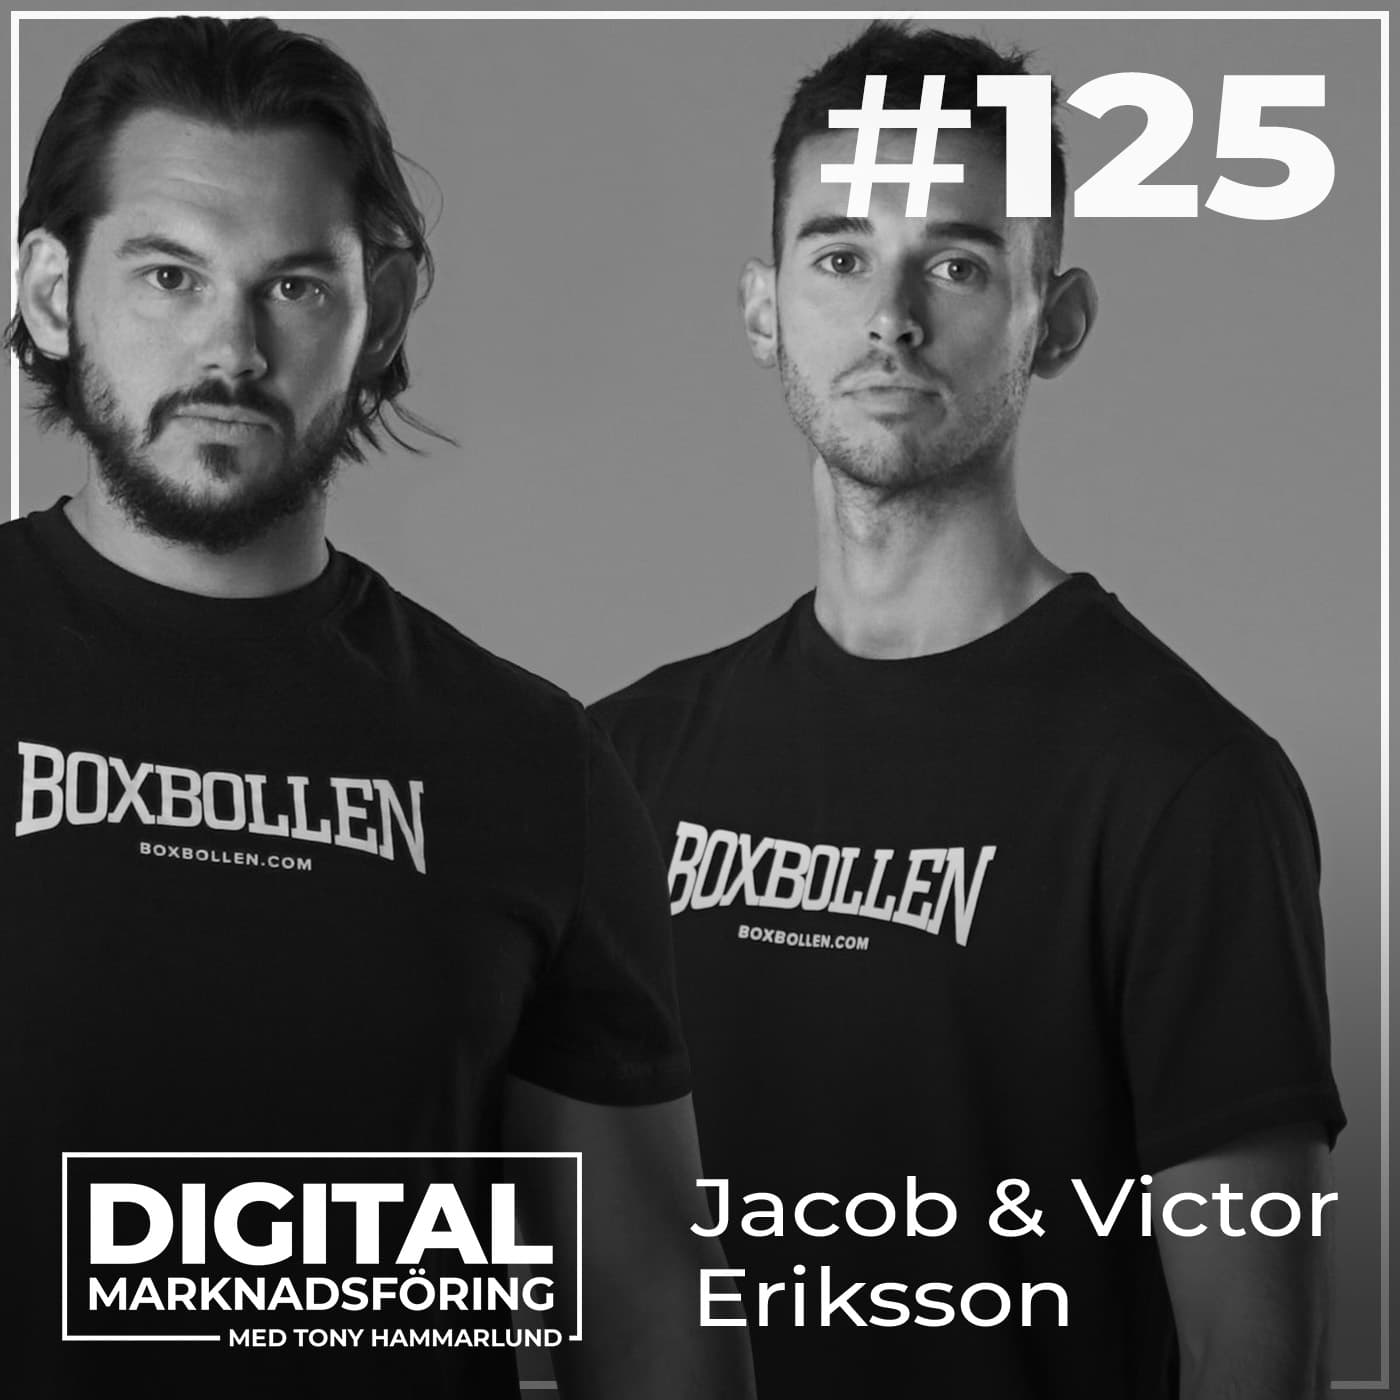 Marknadsföringen bakom Boxbollens resa till 306 miljoner – Jacob & Victor Eriksson #125